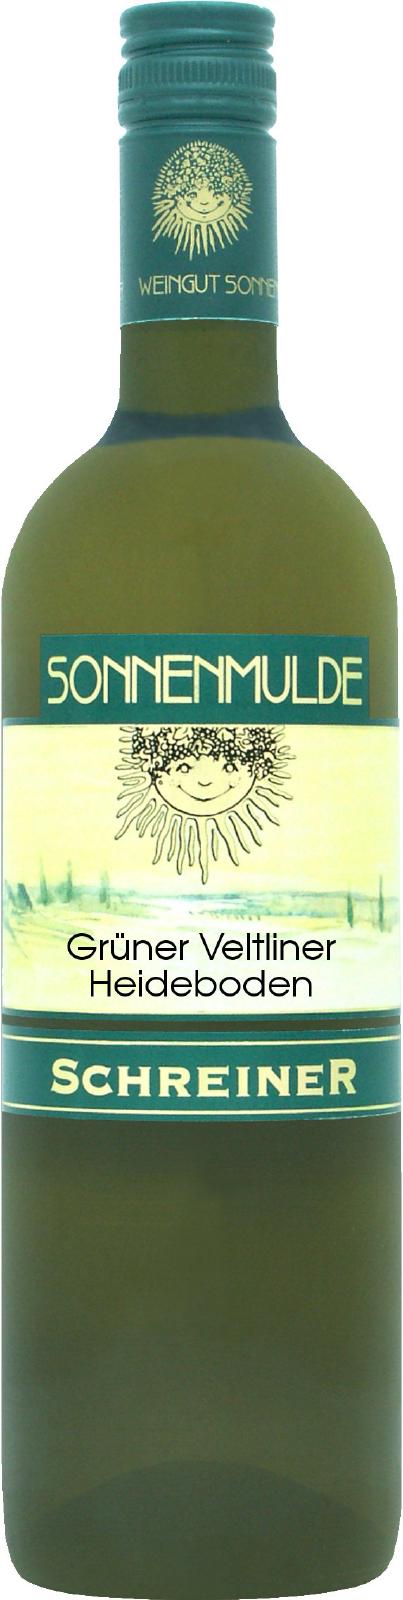 A bottle of Grüner Veltliner Heideboden